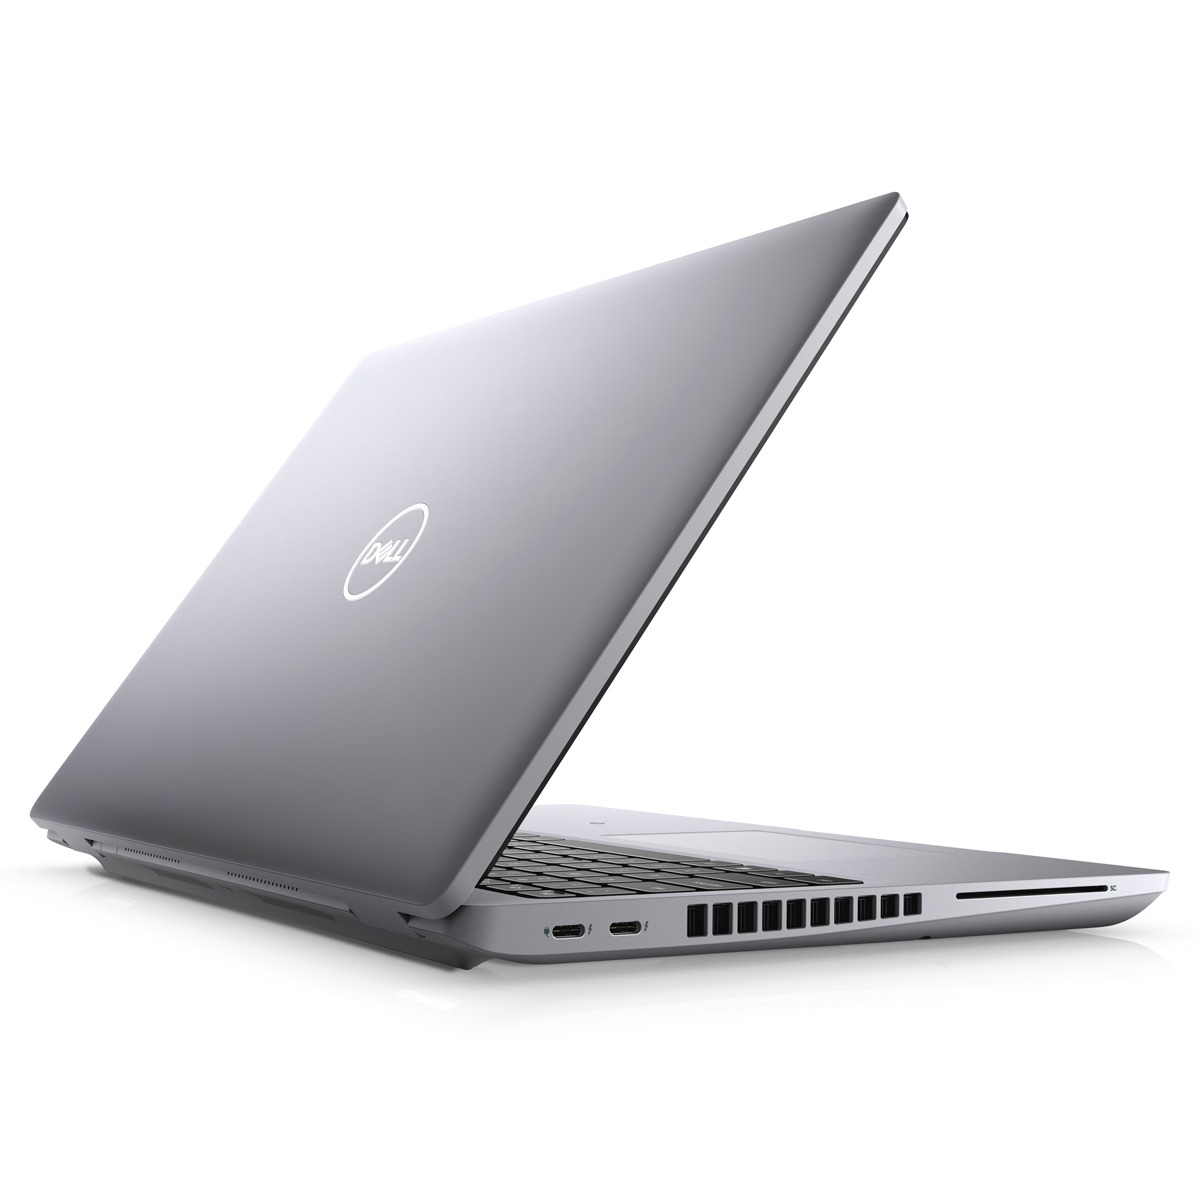 Dell Latitude 5521 - Wydajność i komfort w podróży Szukasz laptopa, który zapewni Ci płynną pracę i komfort w podróży? Dell Latitude 5521 z procesorem Intel Core i5-11500H, 16 GB pamięci RAM i szybkim dyskiem SSD 512 GB to idealny wybór dla osób ceniących wydajność i mobilność.